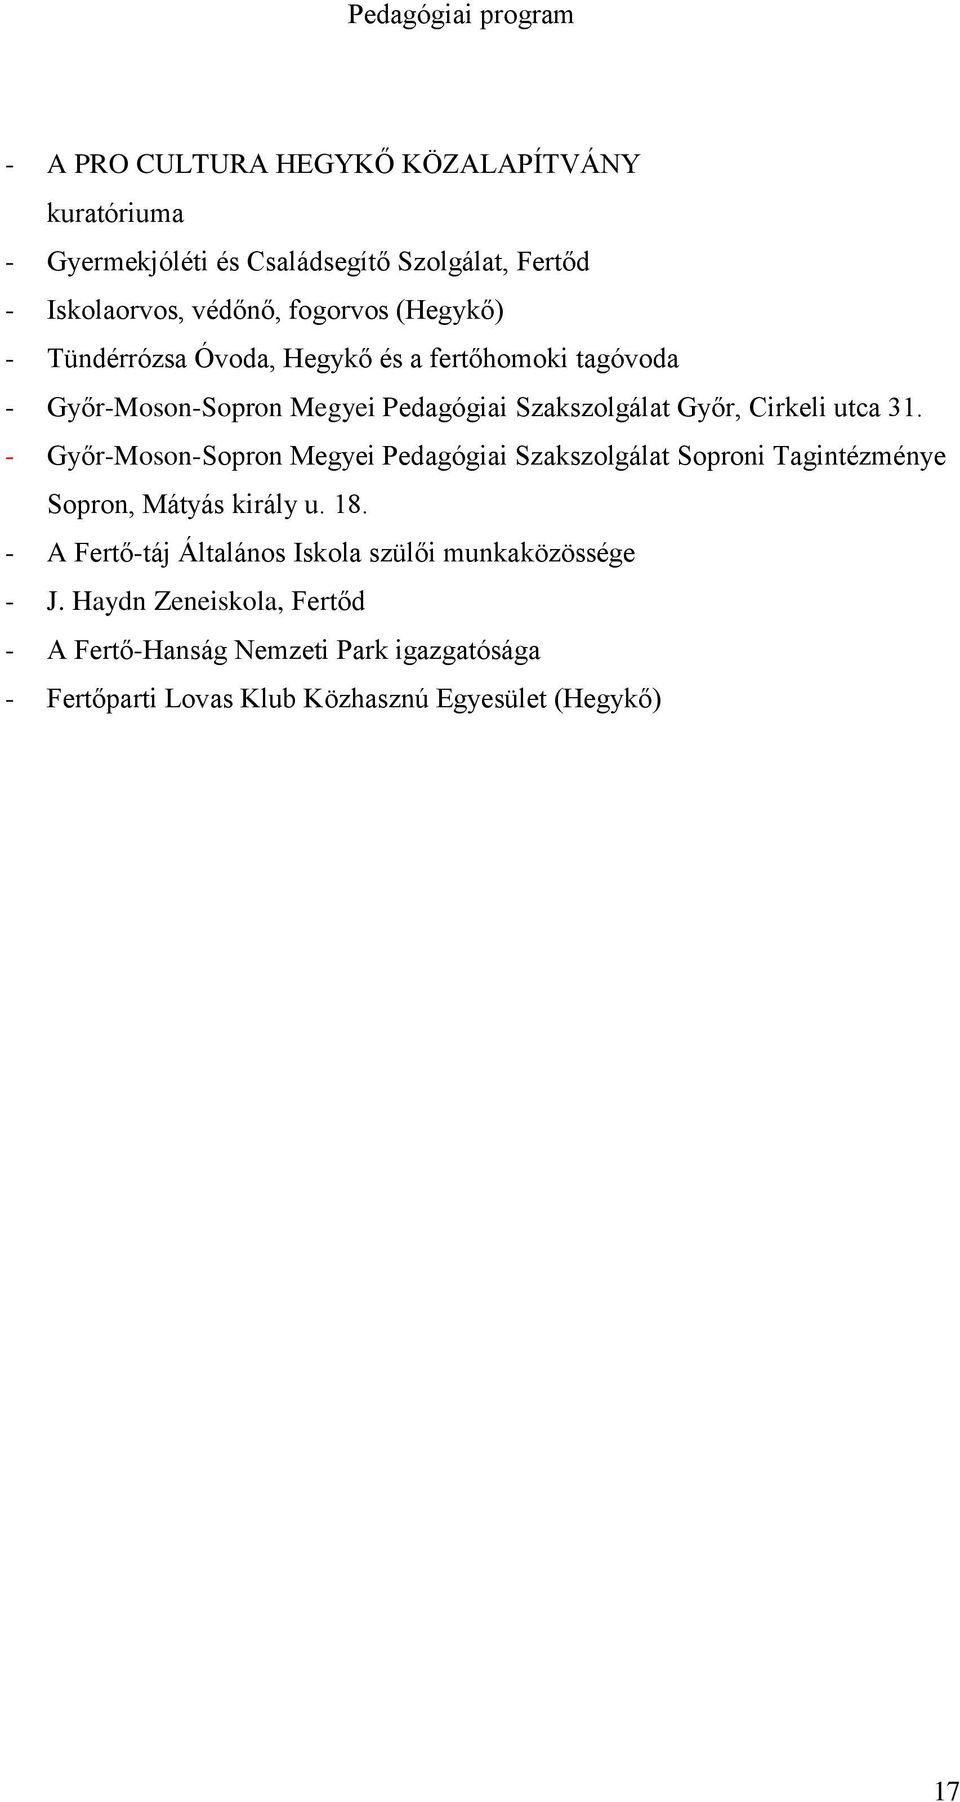 - Győr-Moson-Sopron Megyei Pedagógiai Szakszolgálat Soproni Tagintézménye Sopron, Mátyás király u. 18.